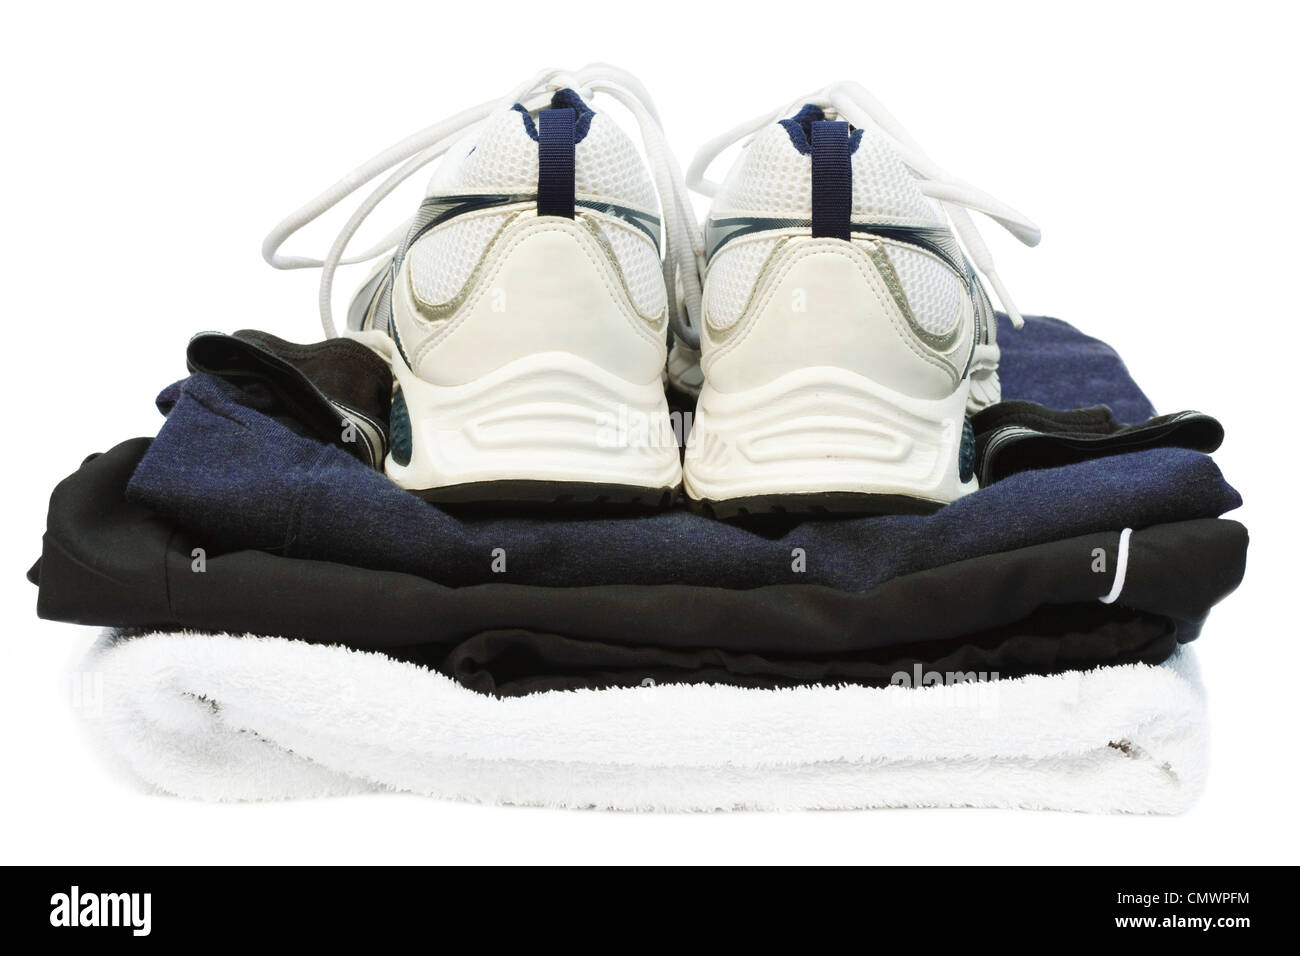 Kit de sport avec des chaussures de course et une serviette, isolé sur un fond blanc avec clipping path Banque D'Images